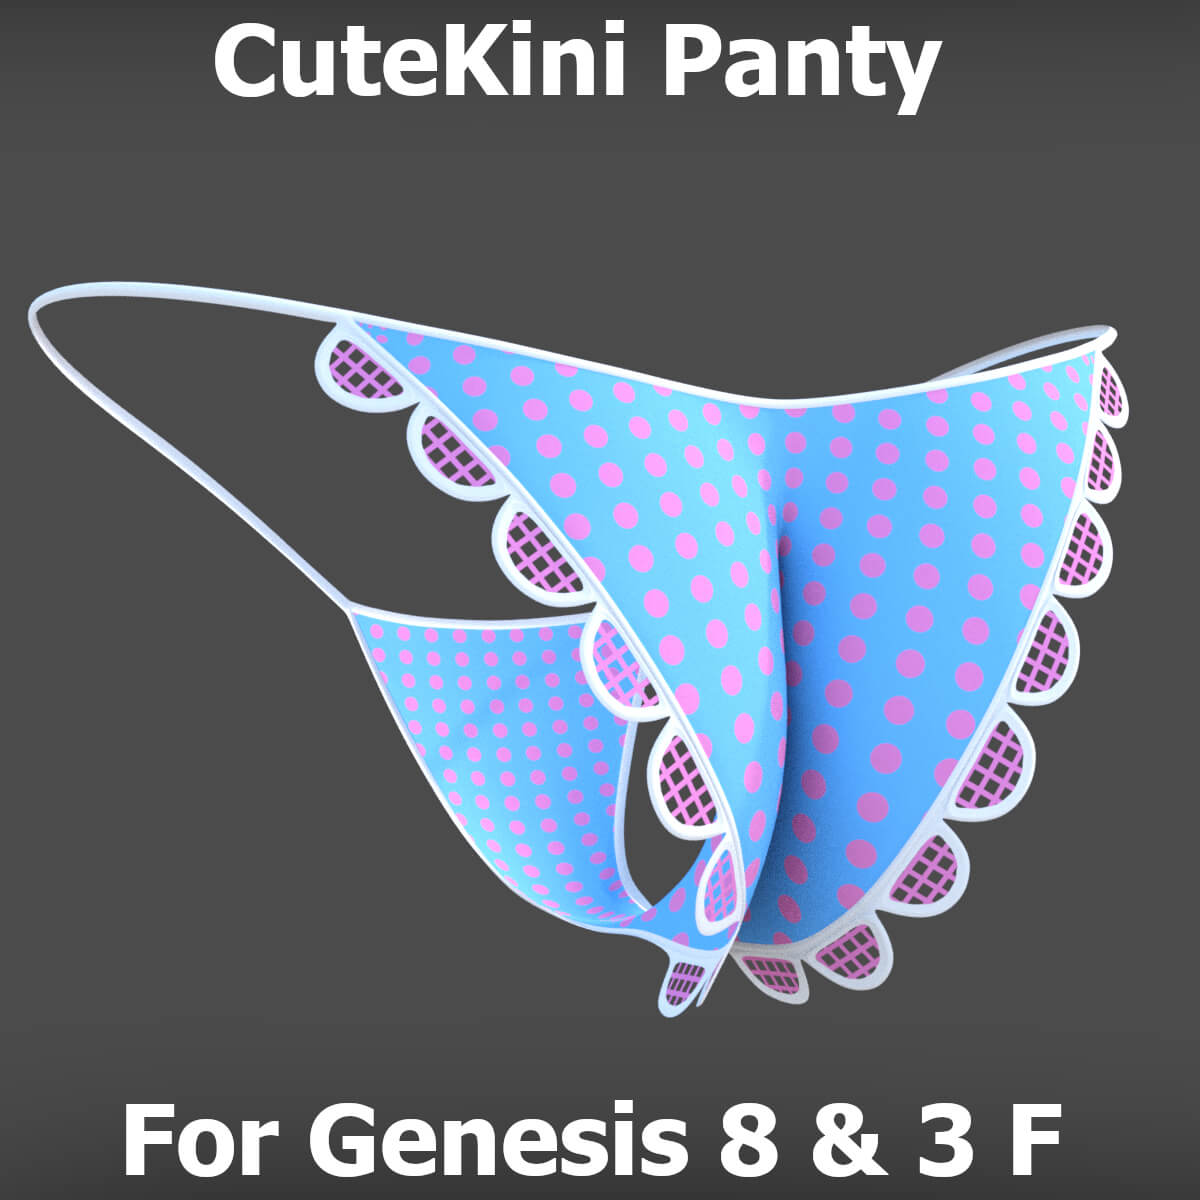 Cutekini Panty for Genesis 8 Female [REPOST]